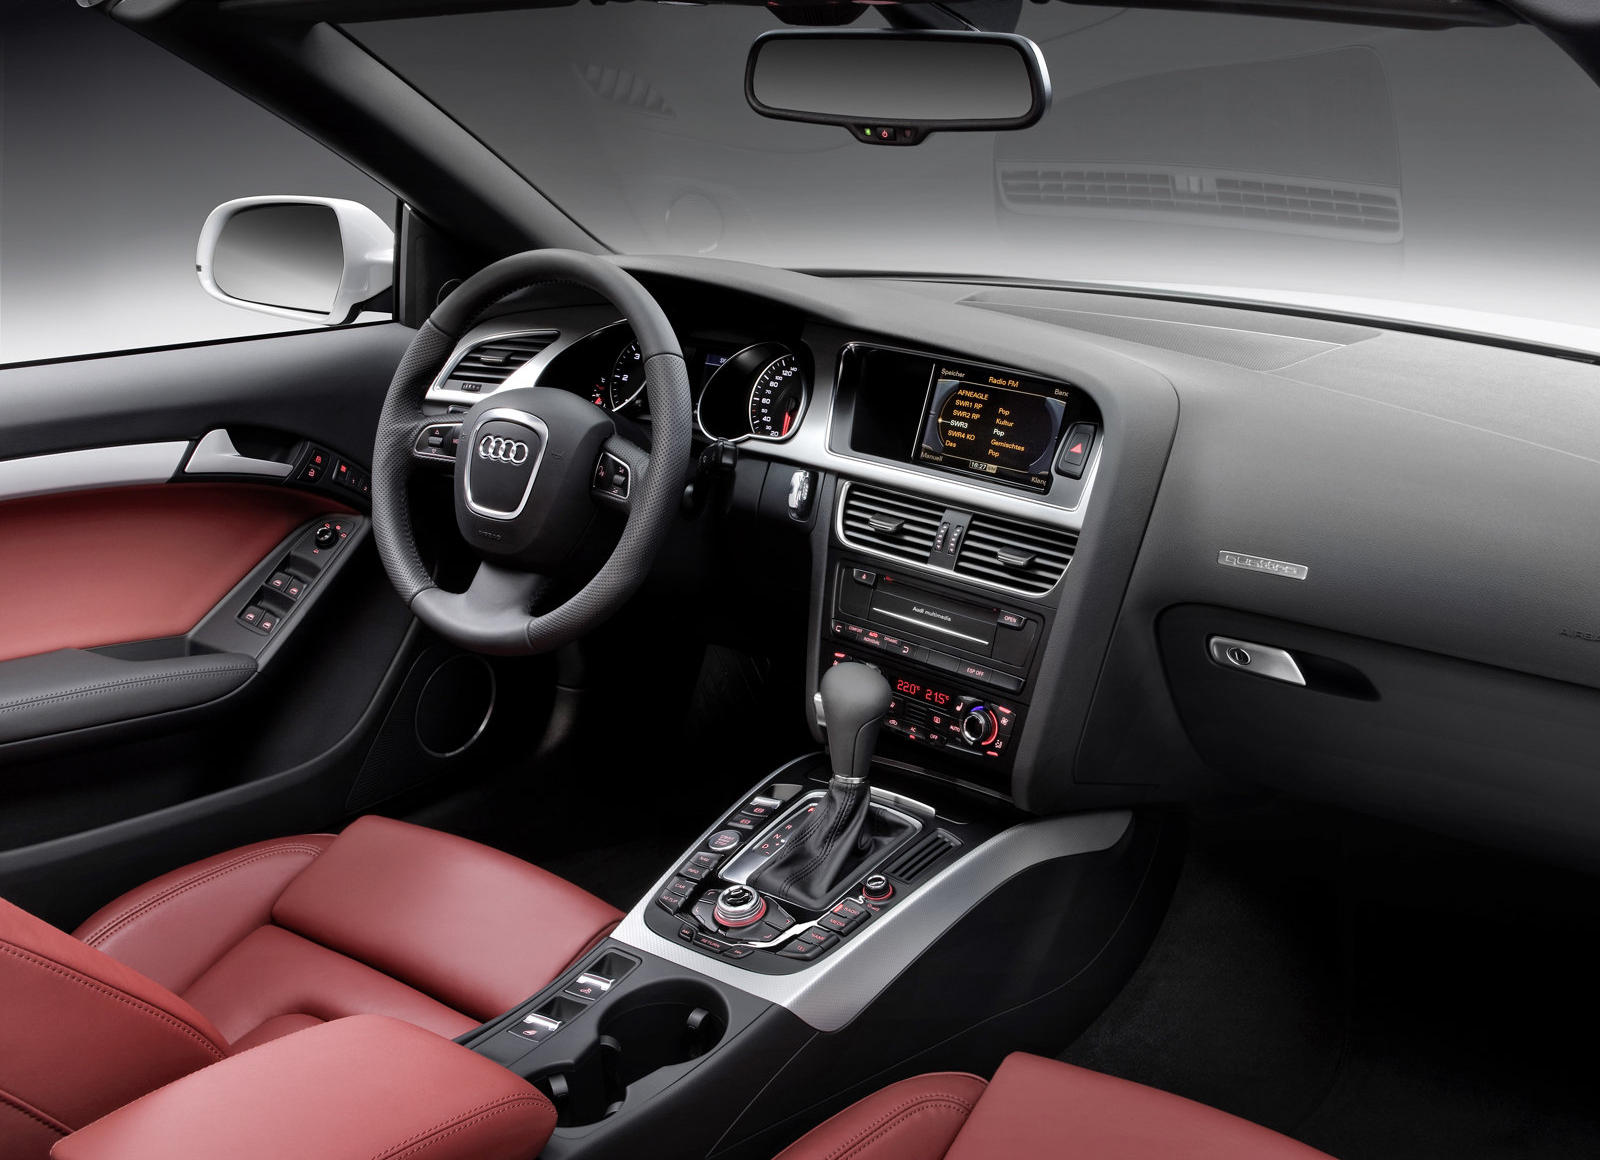 2010 Audi A5 Convertible Interior Photos | CarBuzz